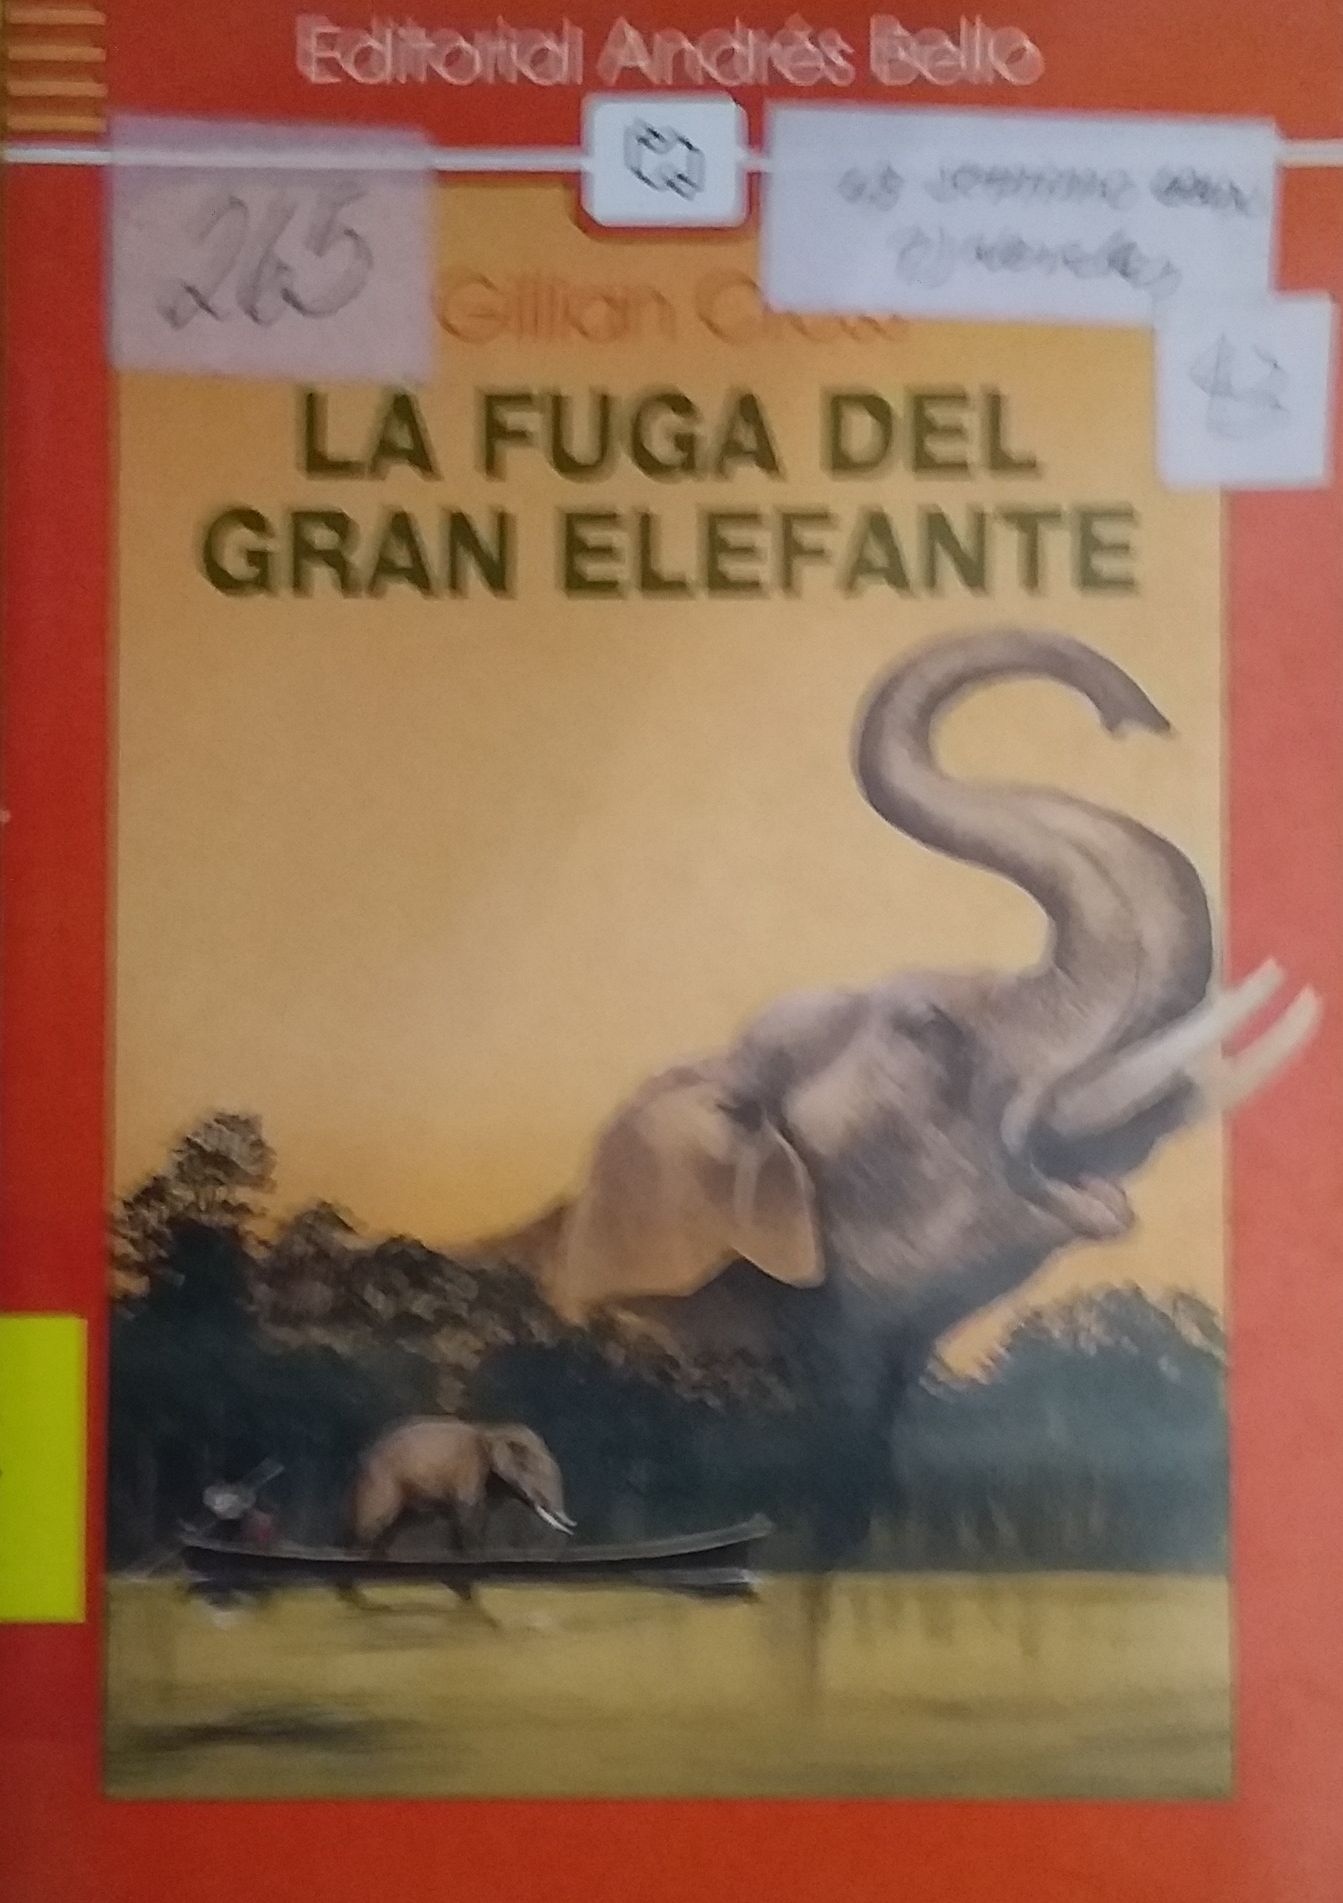 La Fuga del Gran elefante